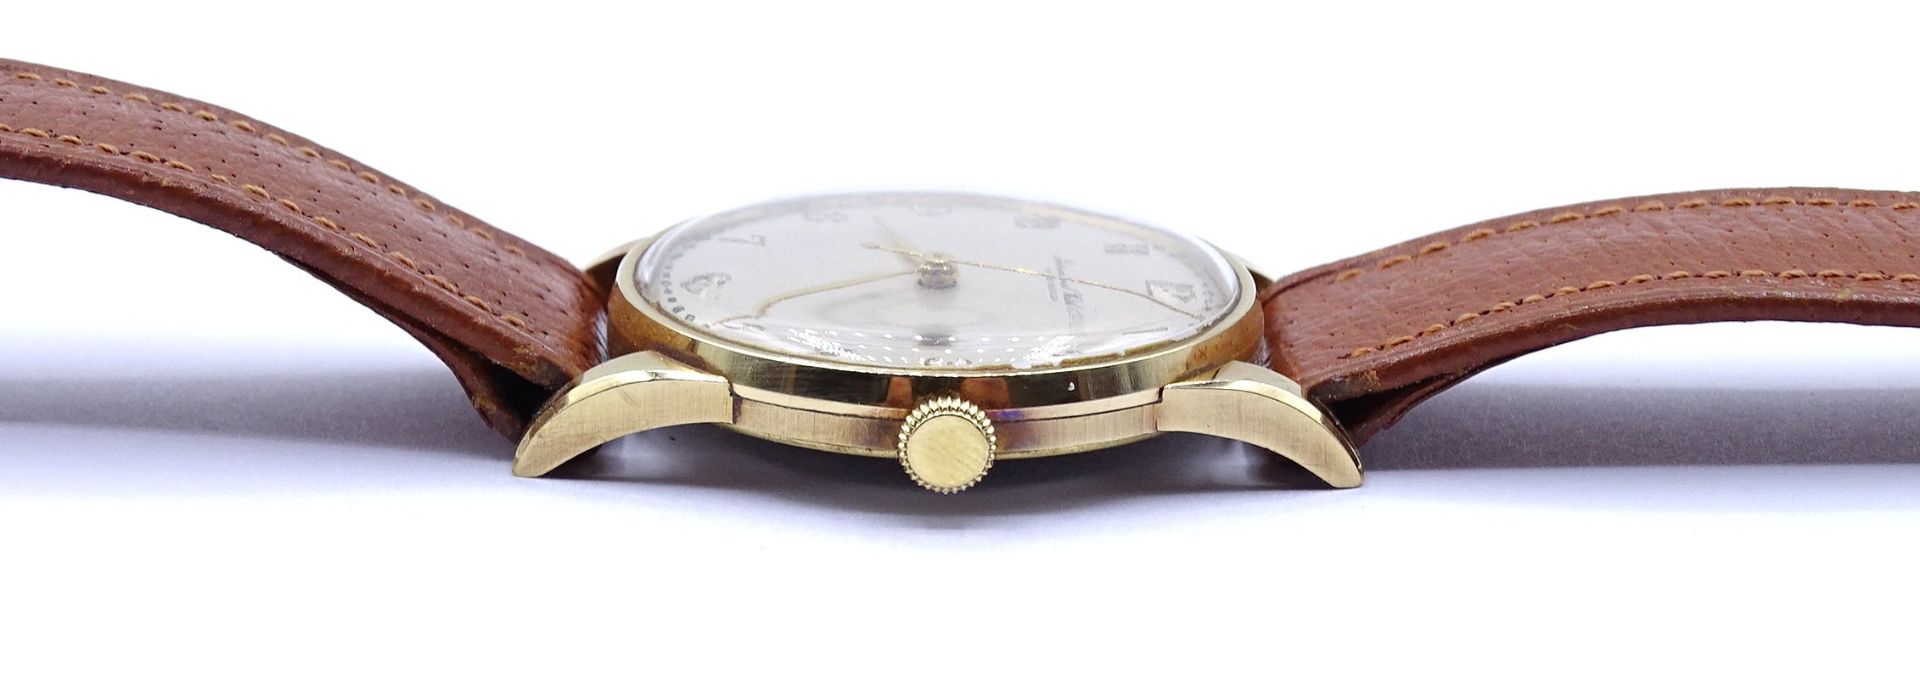 Herren Armbanduhr "IWC" International Watch Co, Schaffhausen, Cal. 89, Gold 750/000, mechanisch, We - Bild 3 aus 11